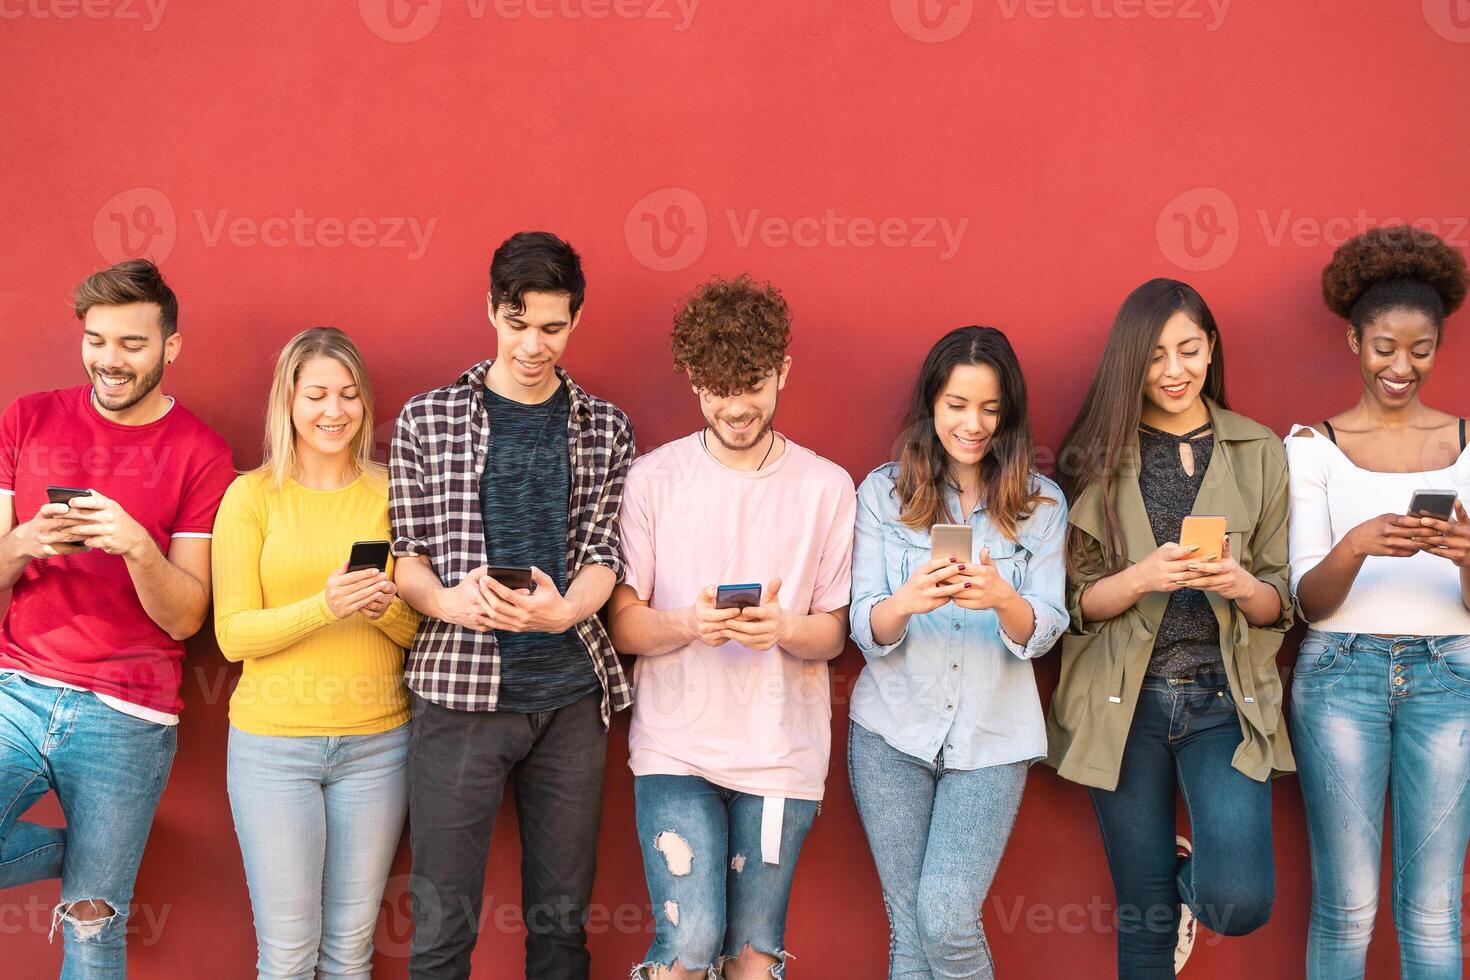 groep jong vrienden gebruik makend van mobiel smartphone buitenshuis - millennial generatie hebben pret met nieuw trends sociaal media apps - jeugd technologie mensen verslaafd - rood achtergrond foto